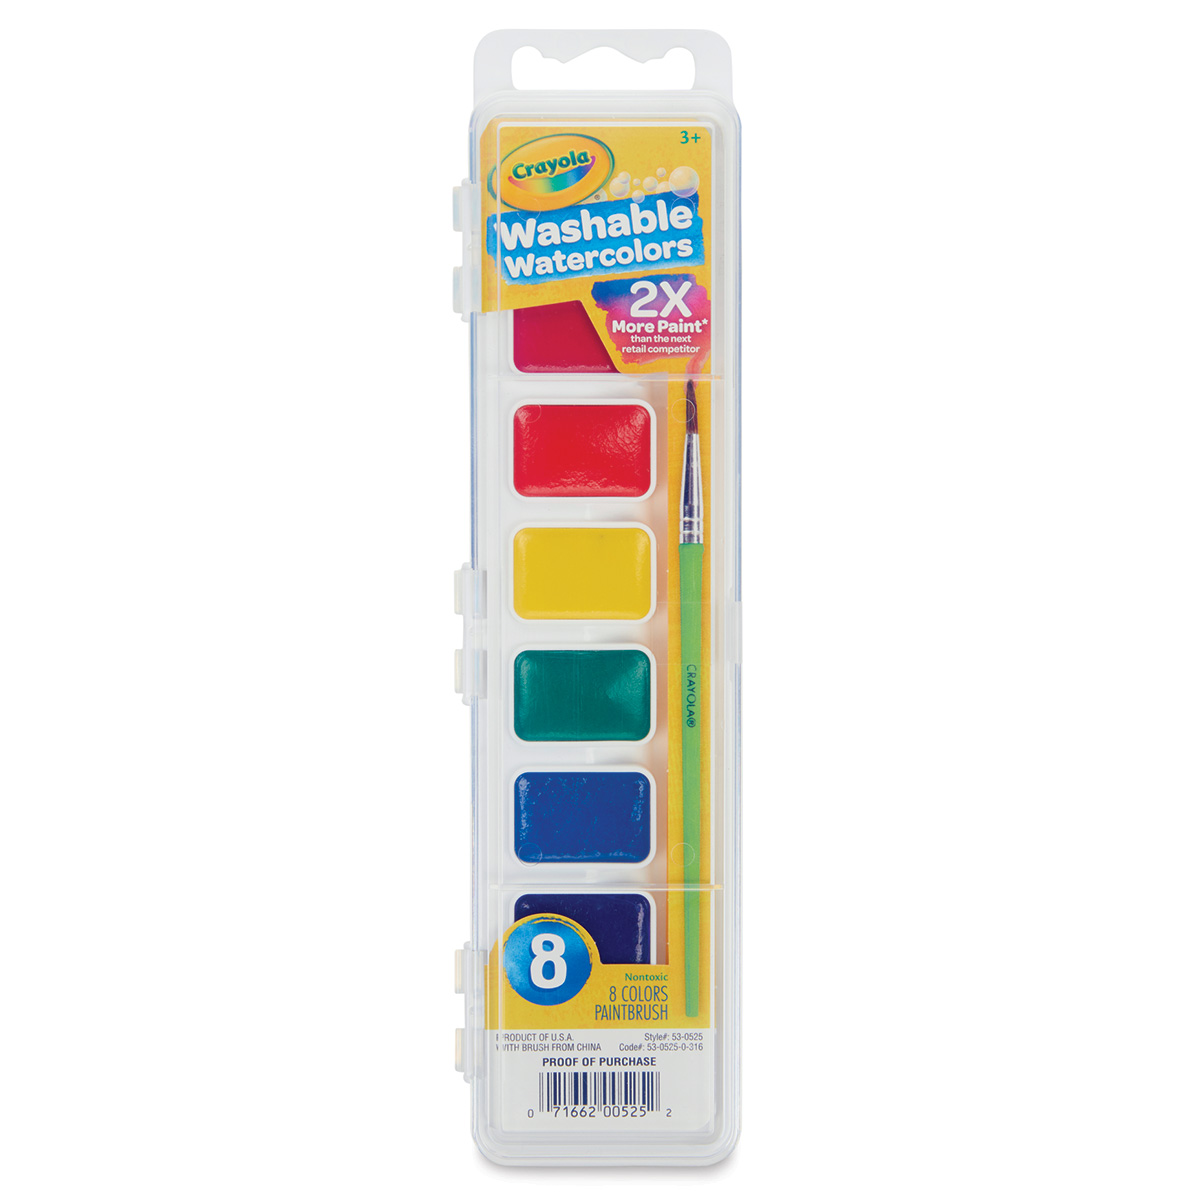 Crayola Washable Watercolor Pan Sets | Blick Art Materials